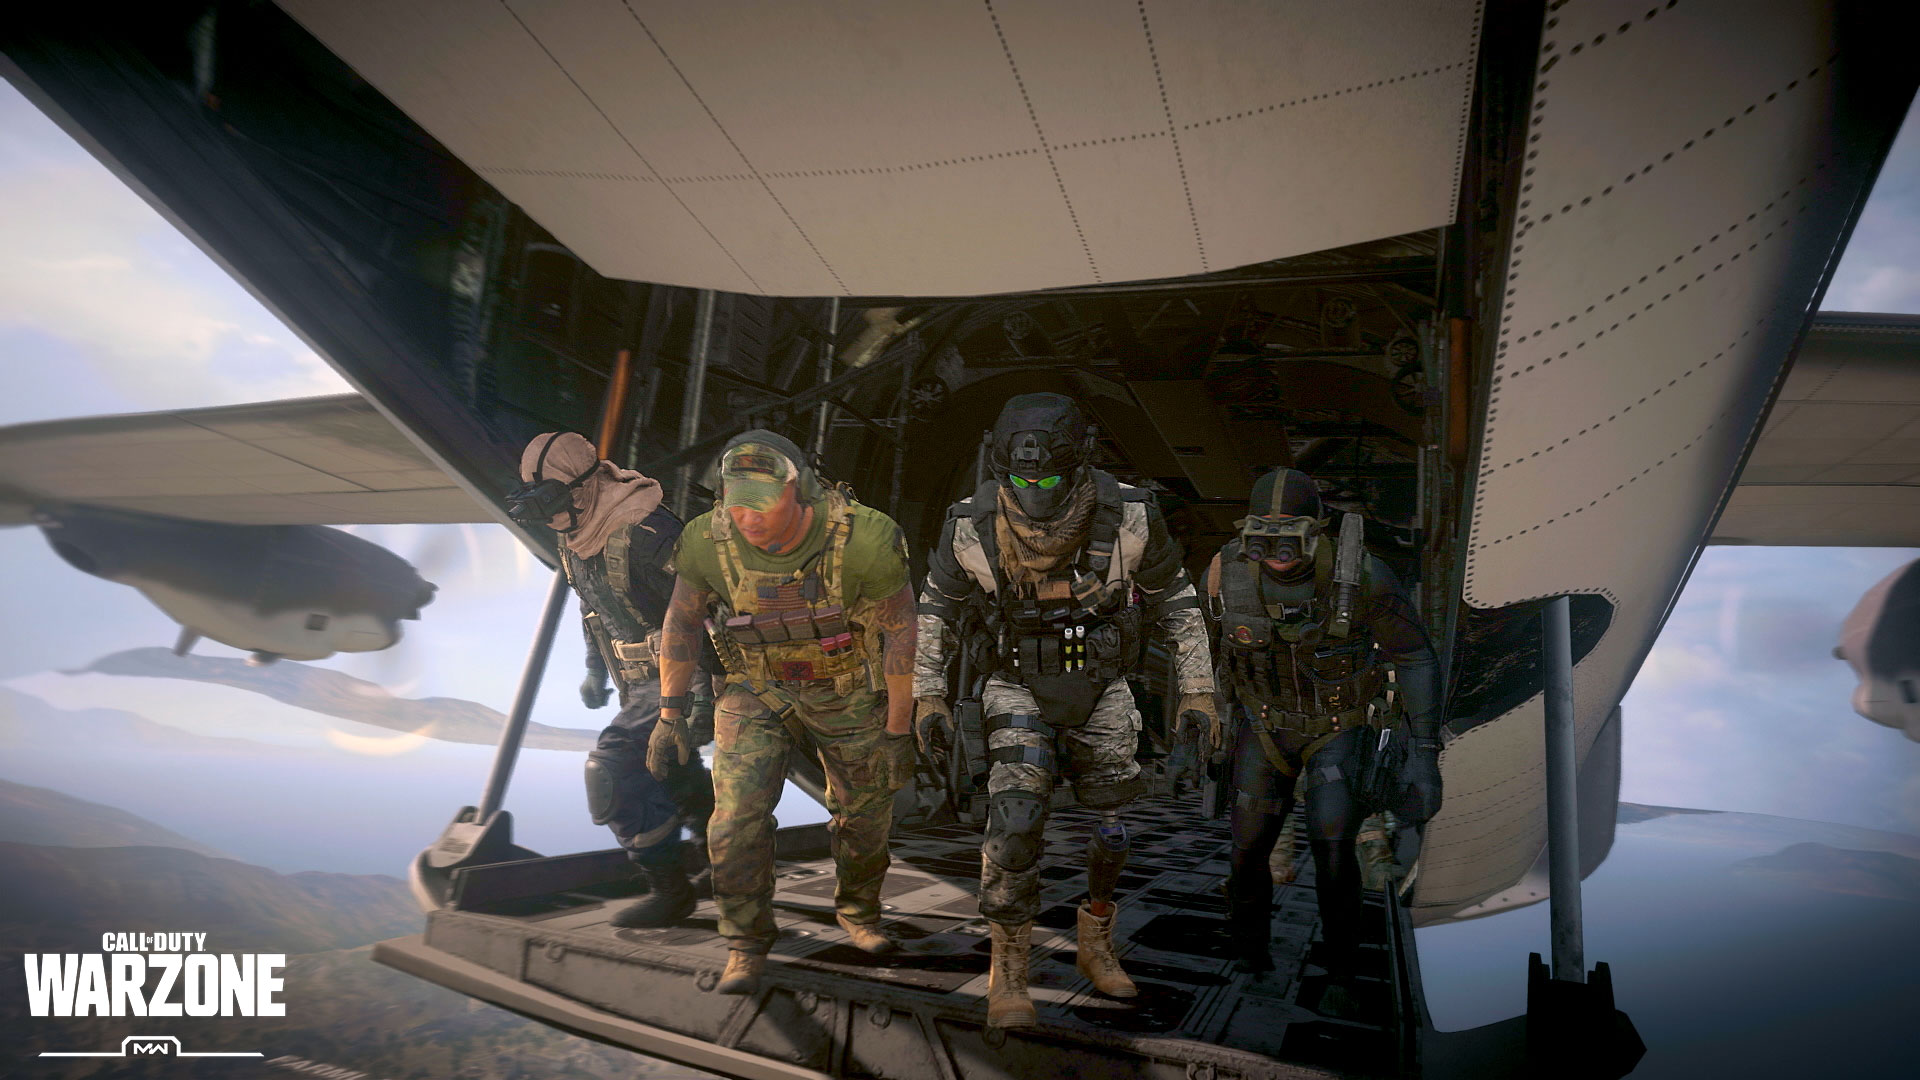 Call of Duty: Warzone umoliwi gr nawet 200 osobom na jednej mapie